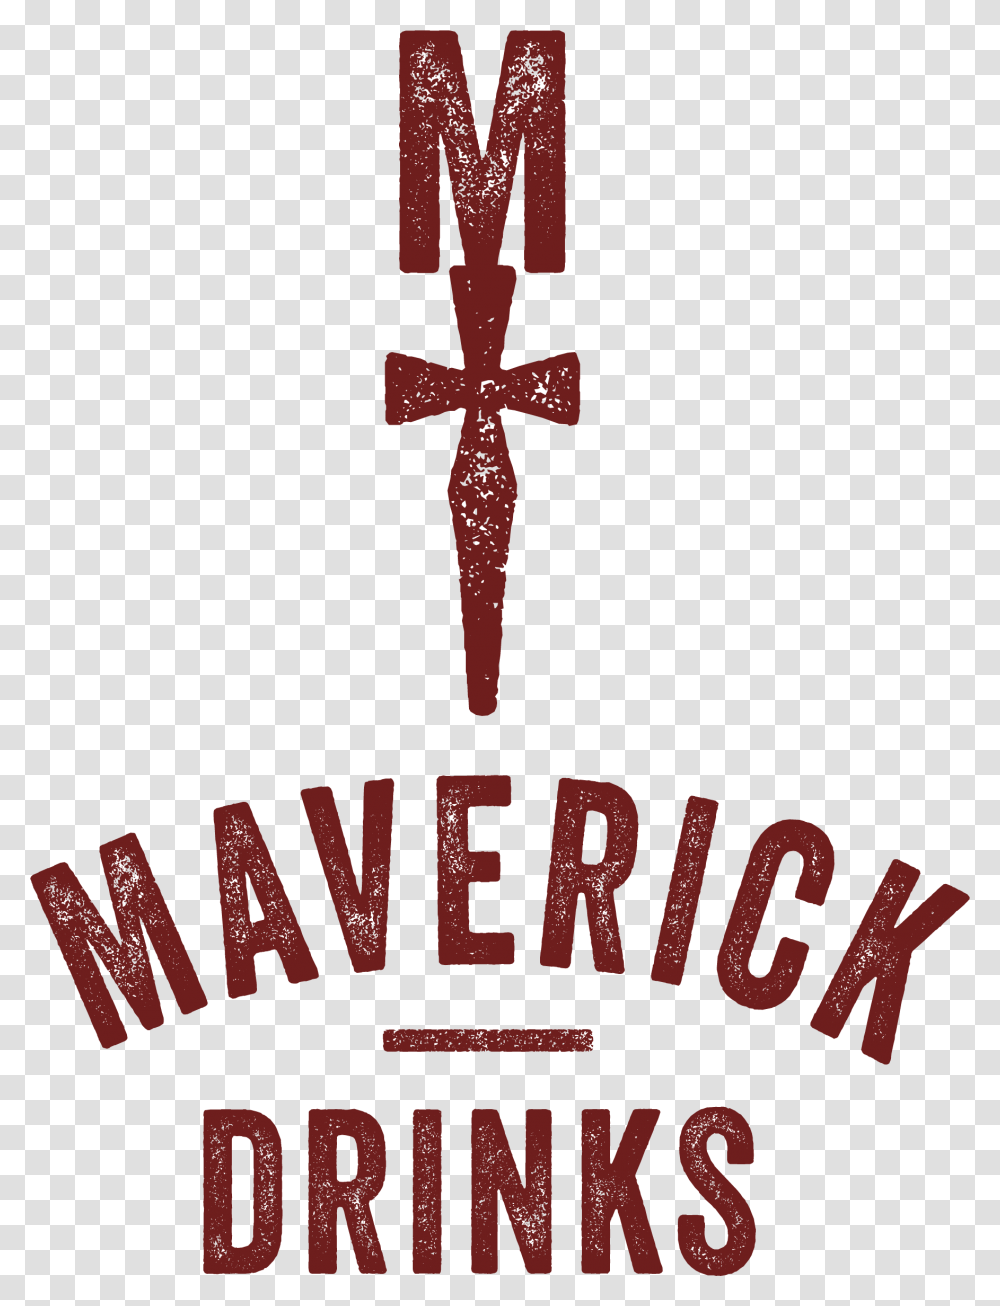 Maverick Resources Maverick Drinks, Logo, Weapon Transparent Png